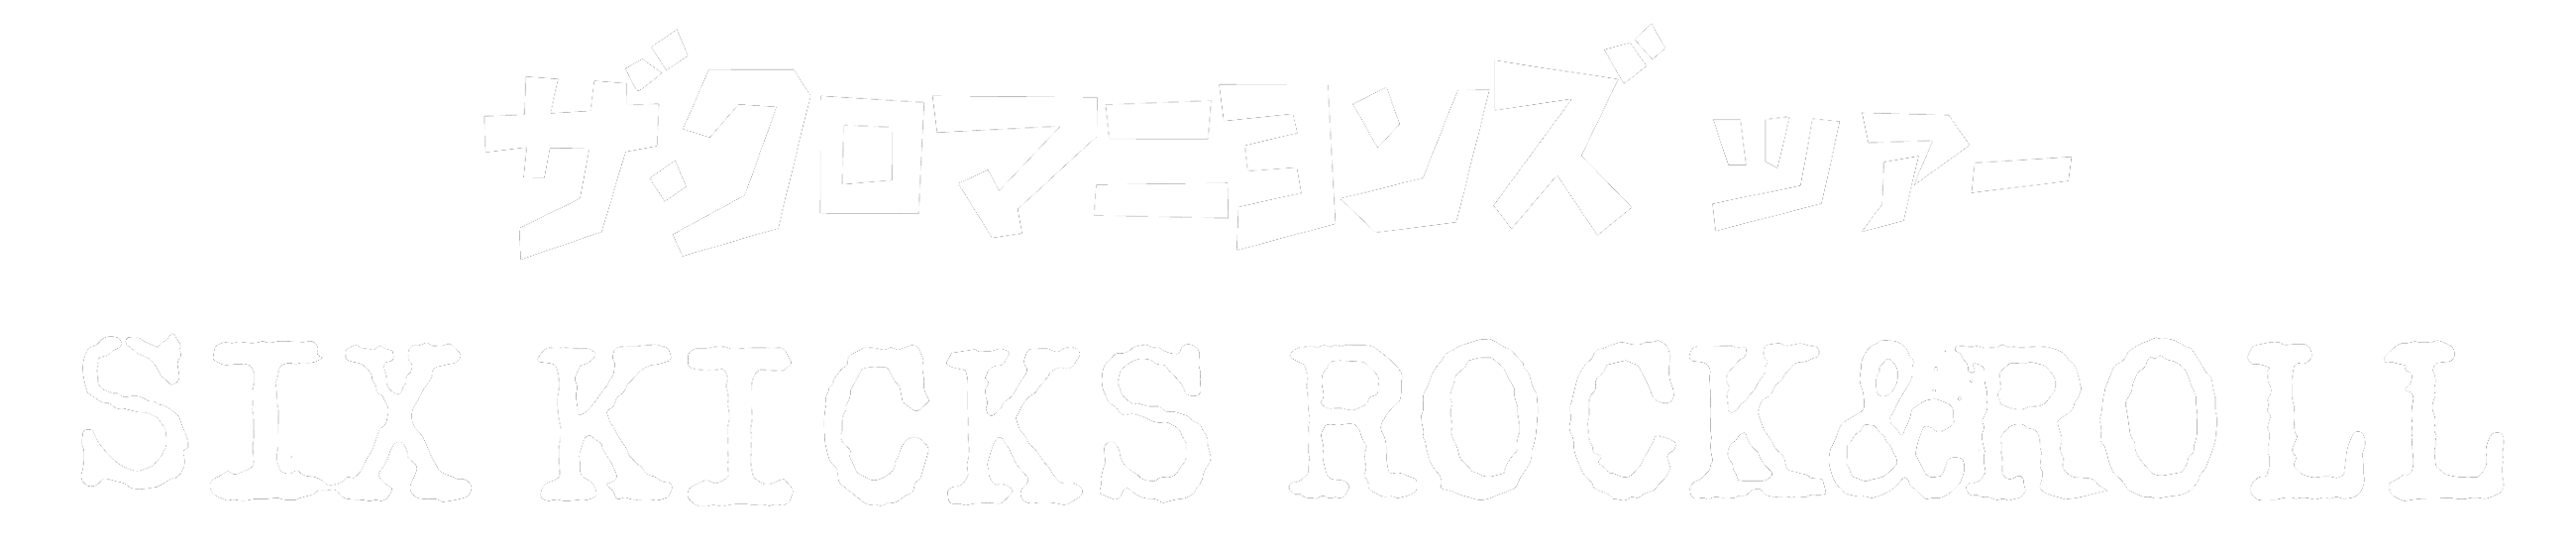 ザ・クロマニヨンズ ツアー SIX KICKS ROCK&ROLL